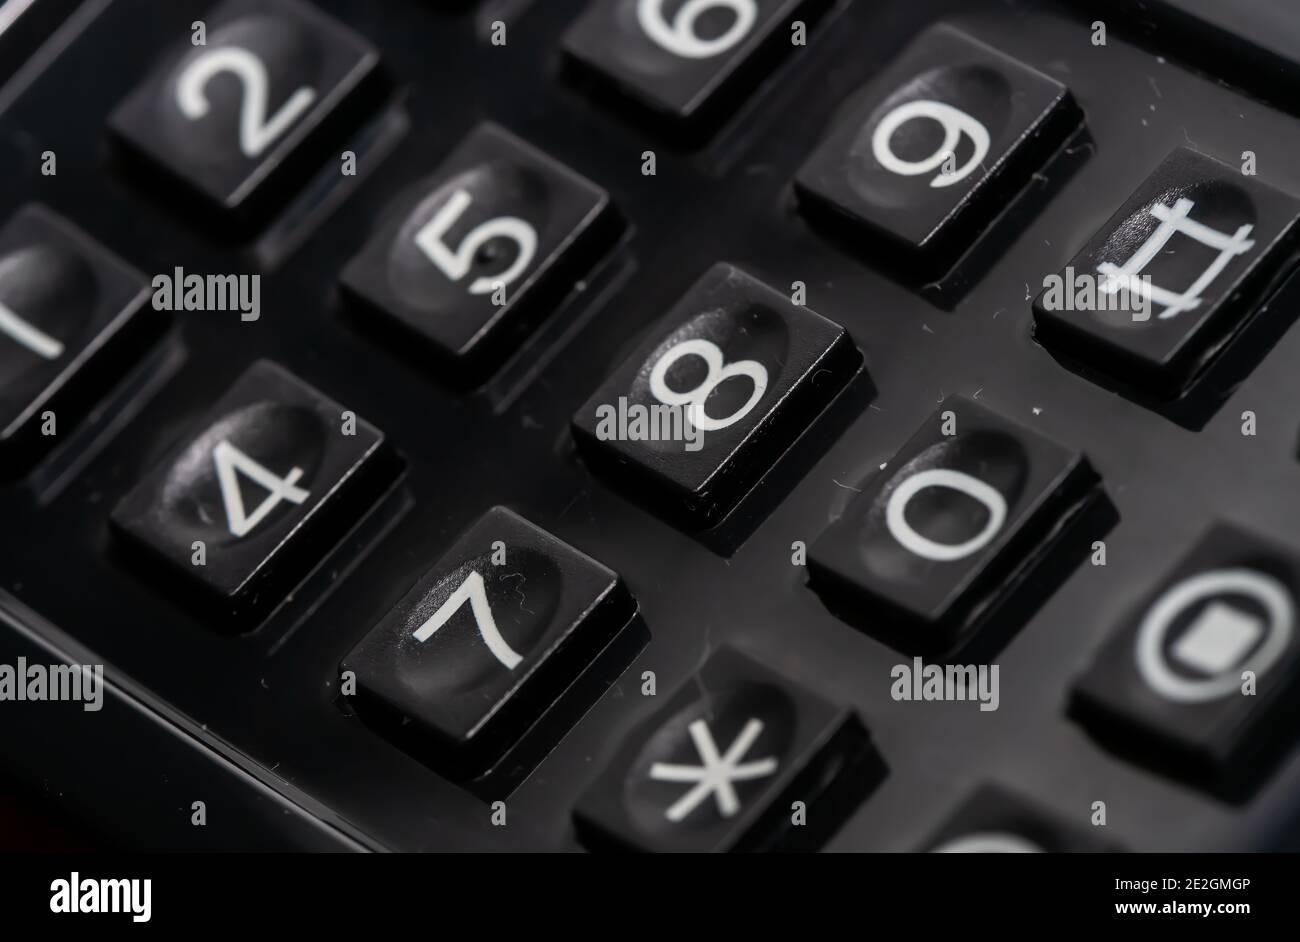 Primo piano dei tasti di selezione numerica su un vecchio telefono analogico. Foto Stock